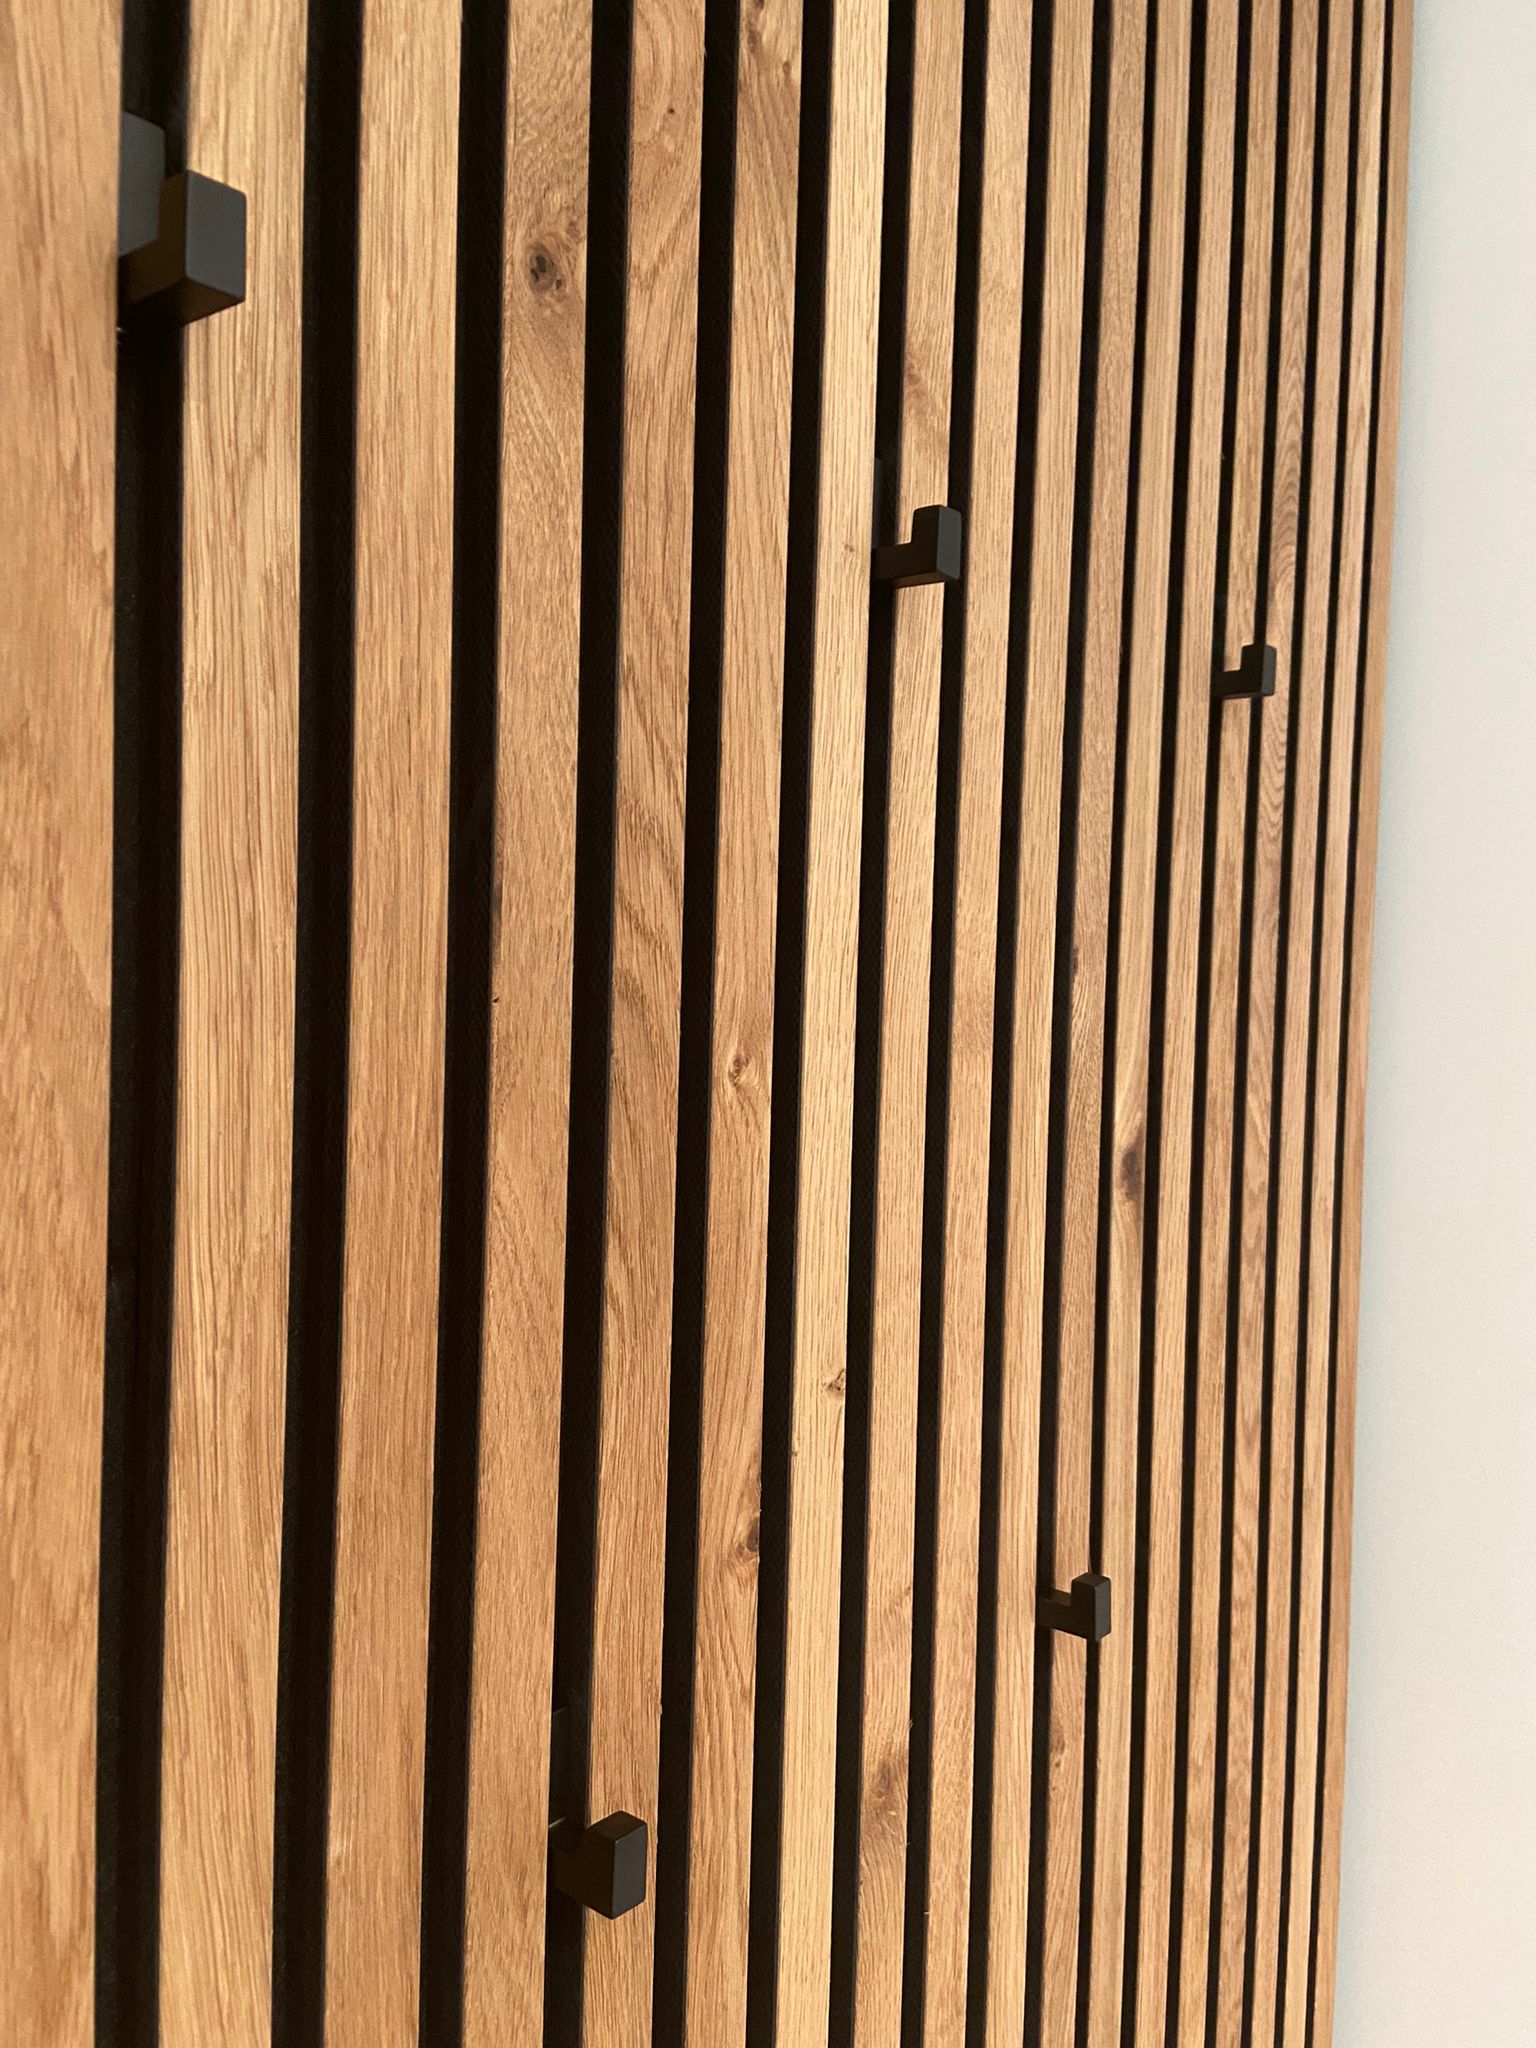 Holzpaneele mit Kleiderhaken in einer Garderobe im Flur (Detailansicht)